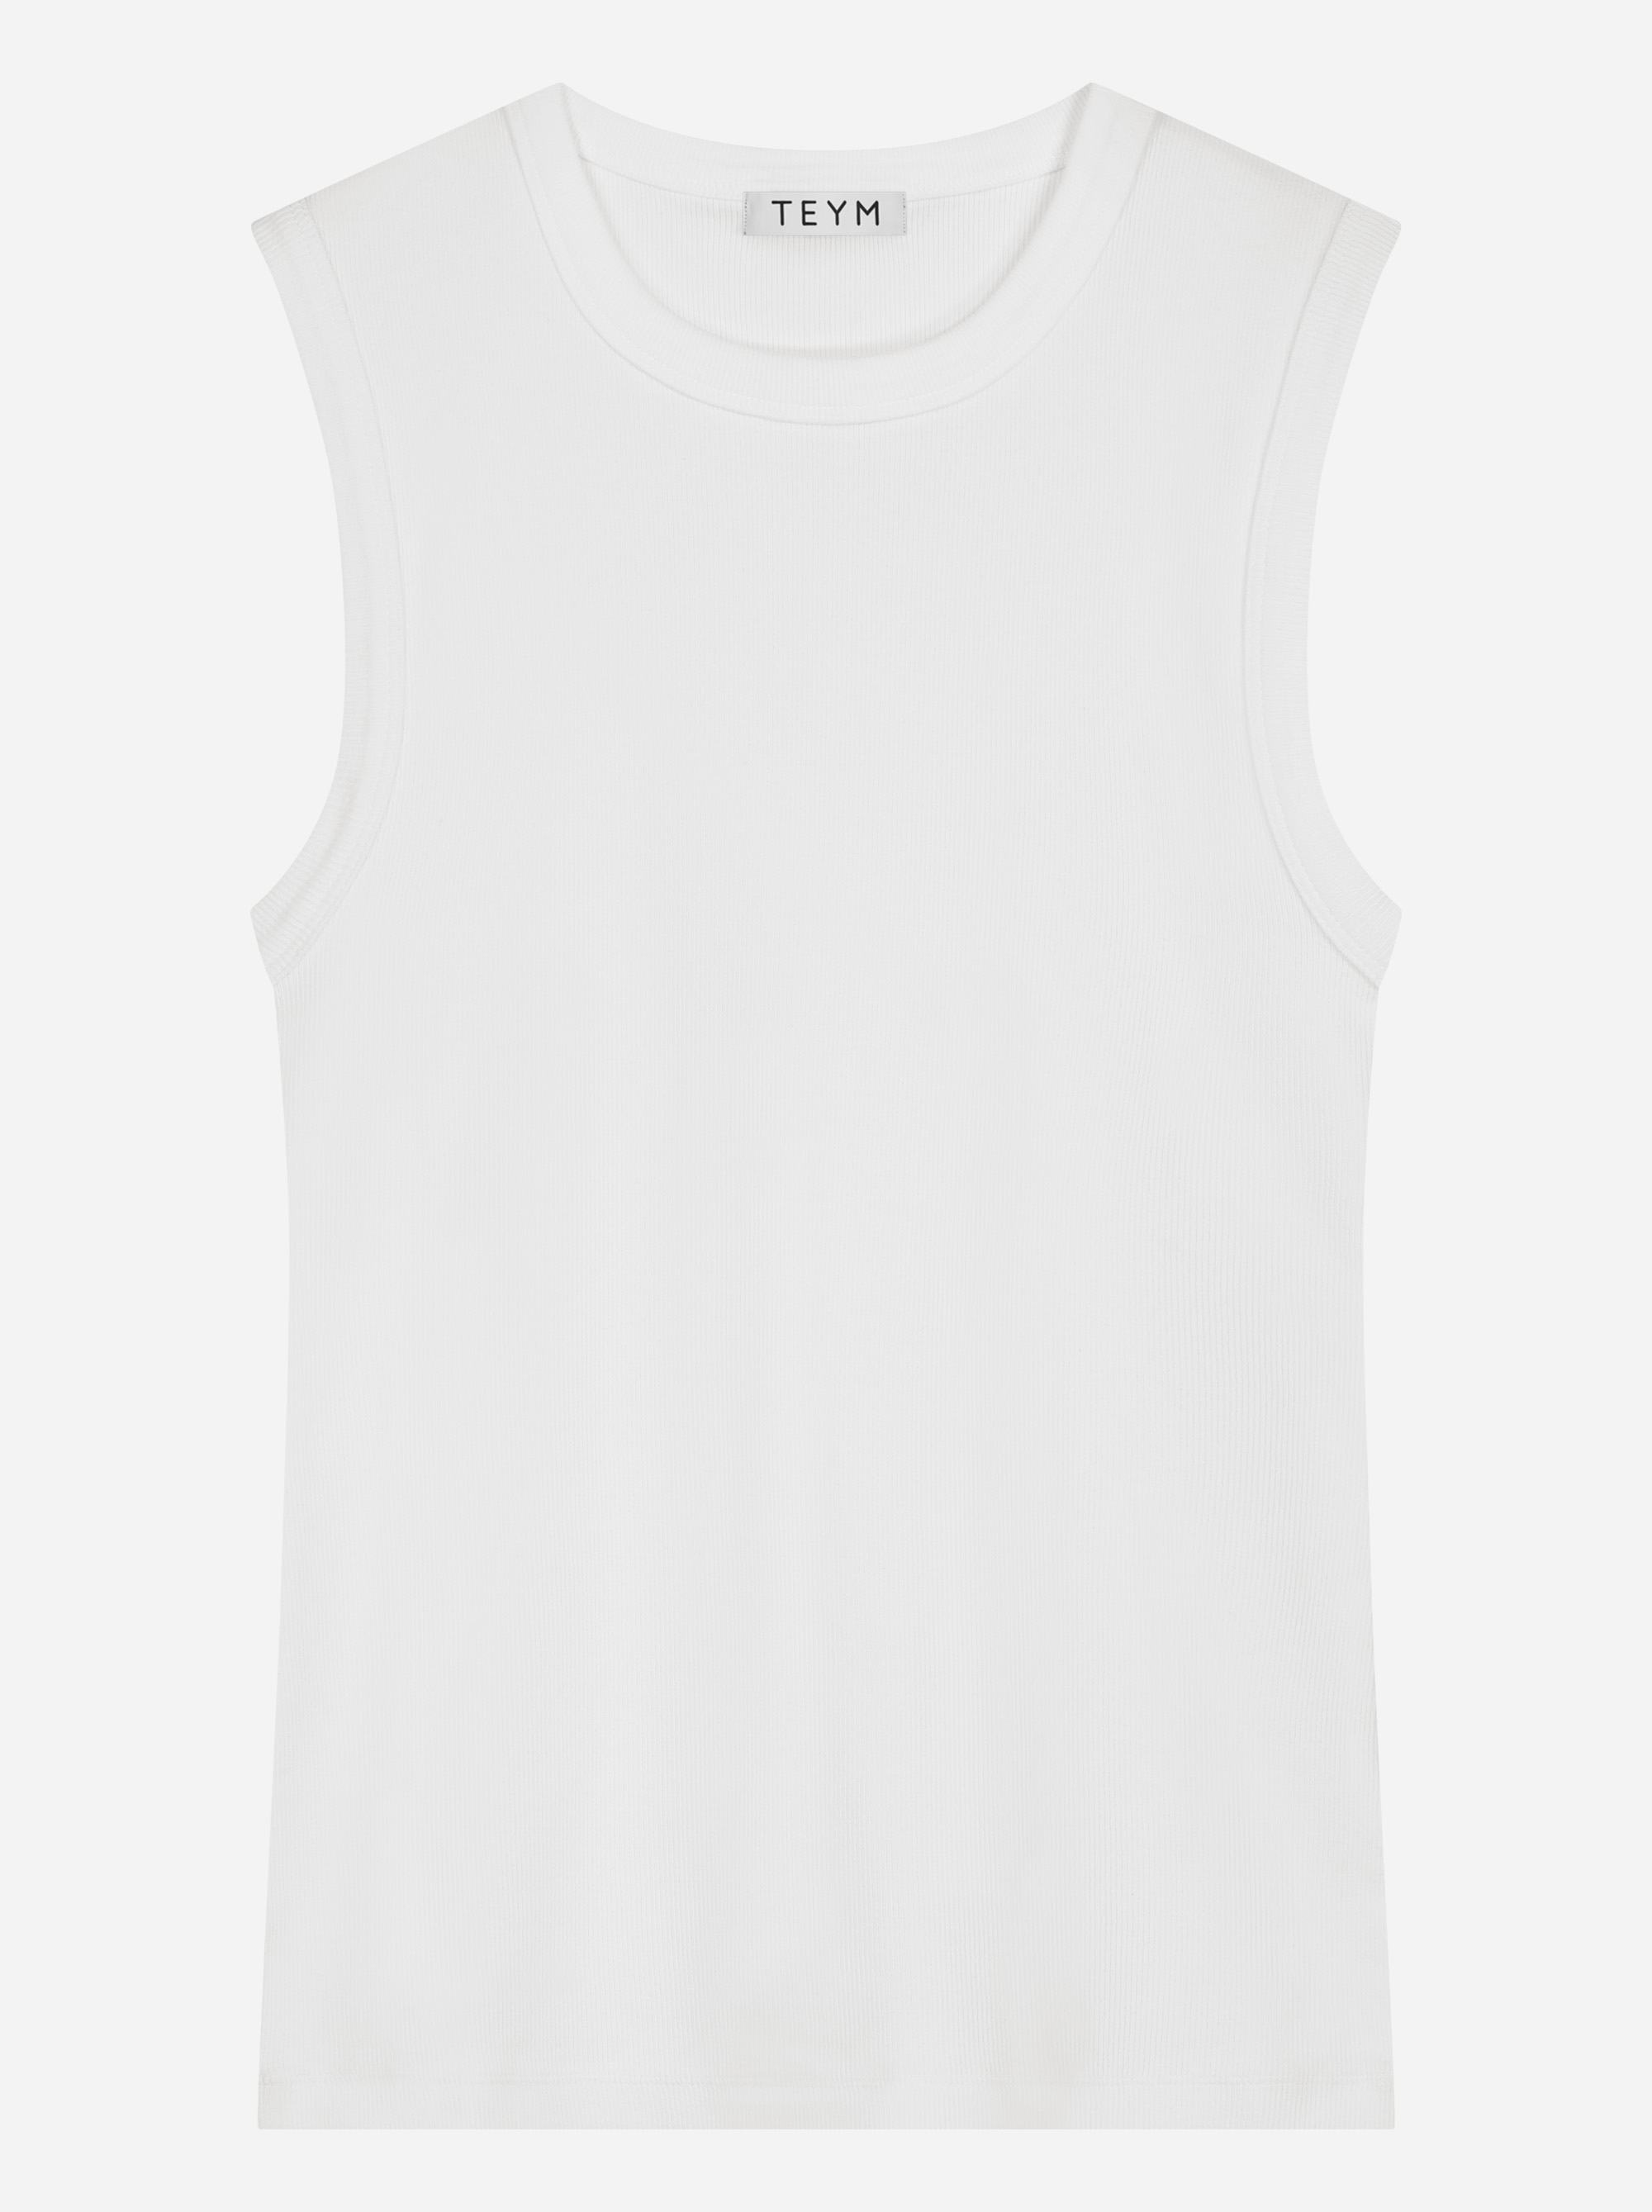 Teym - The Sleeveless T-Shirt - Women - White